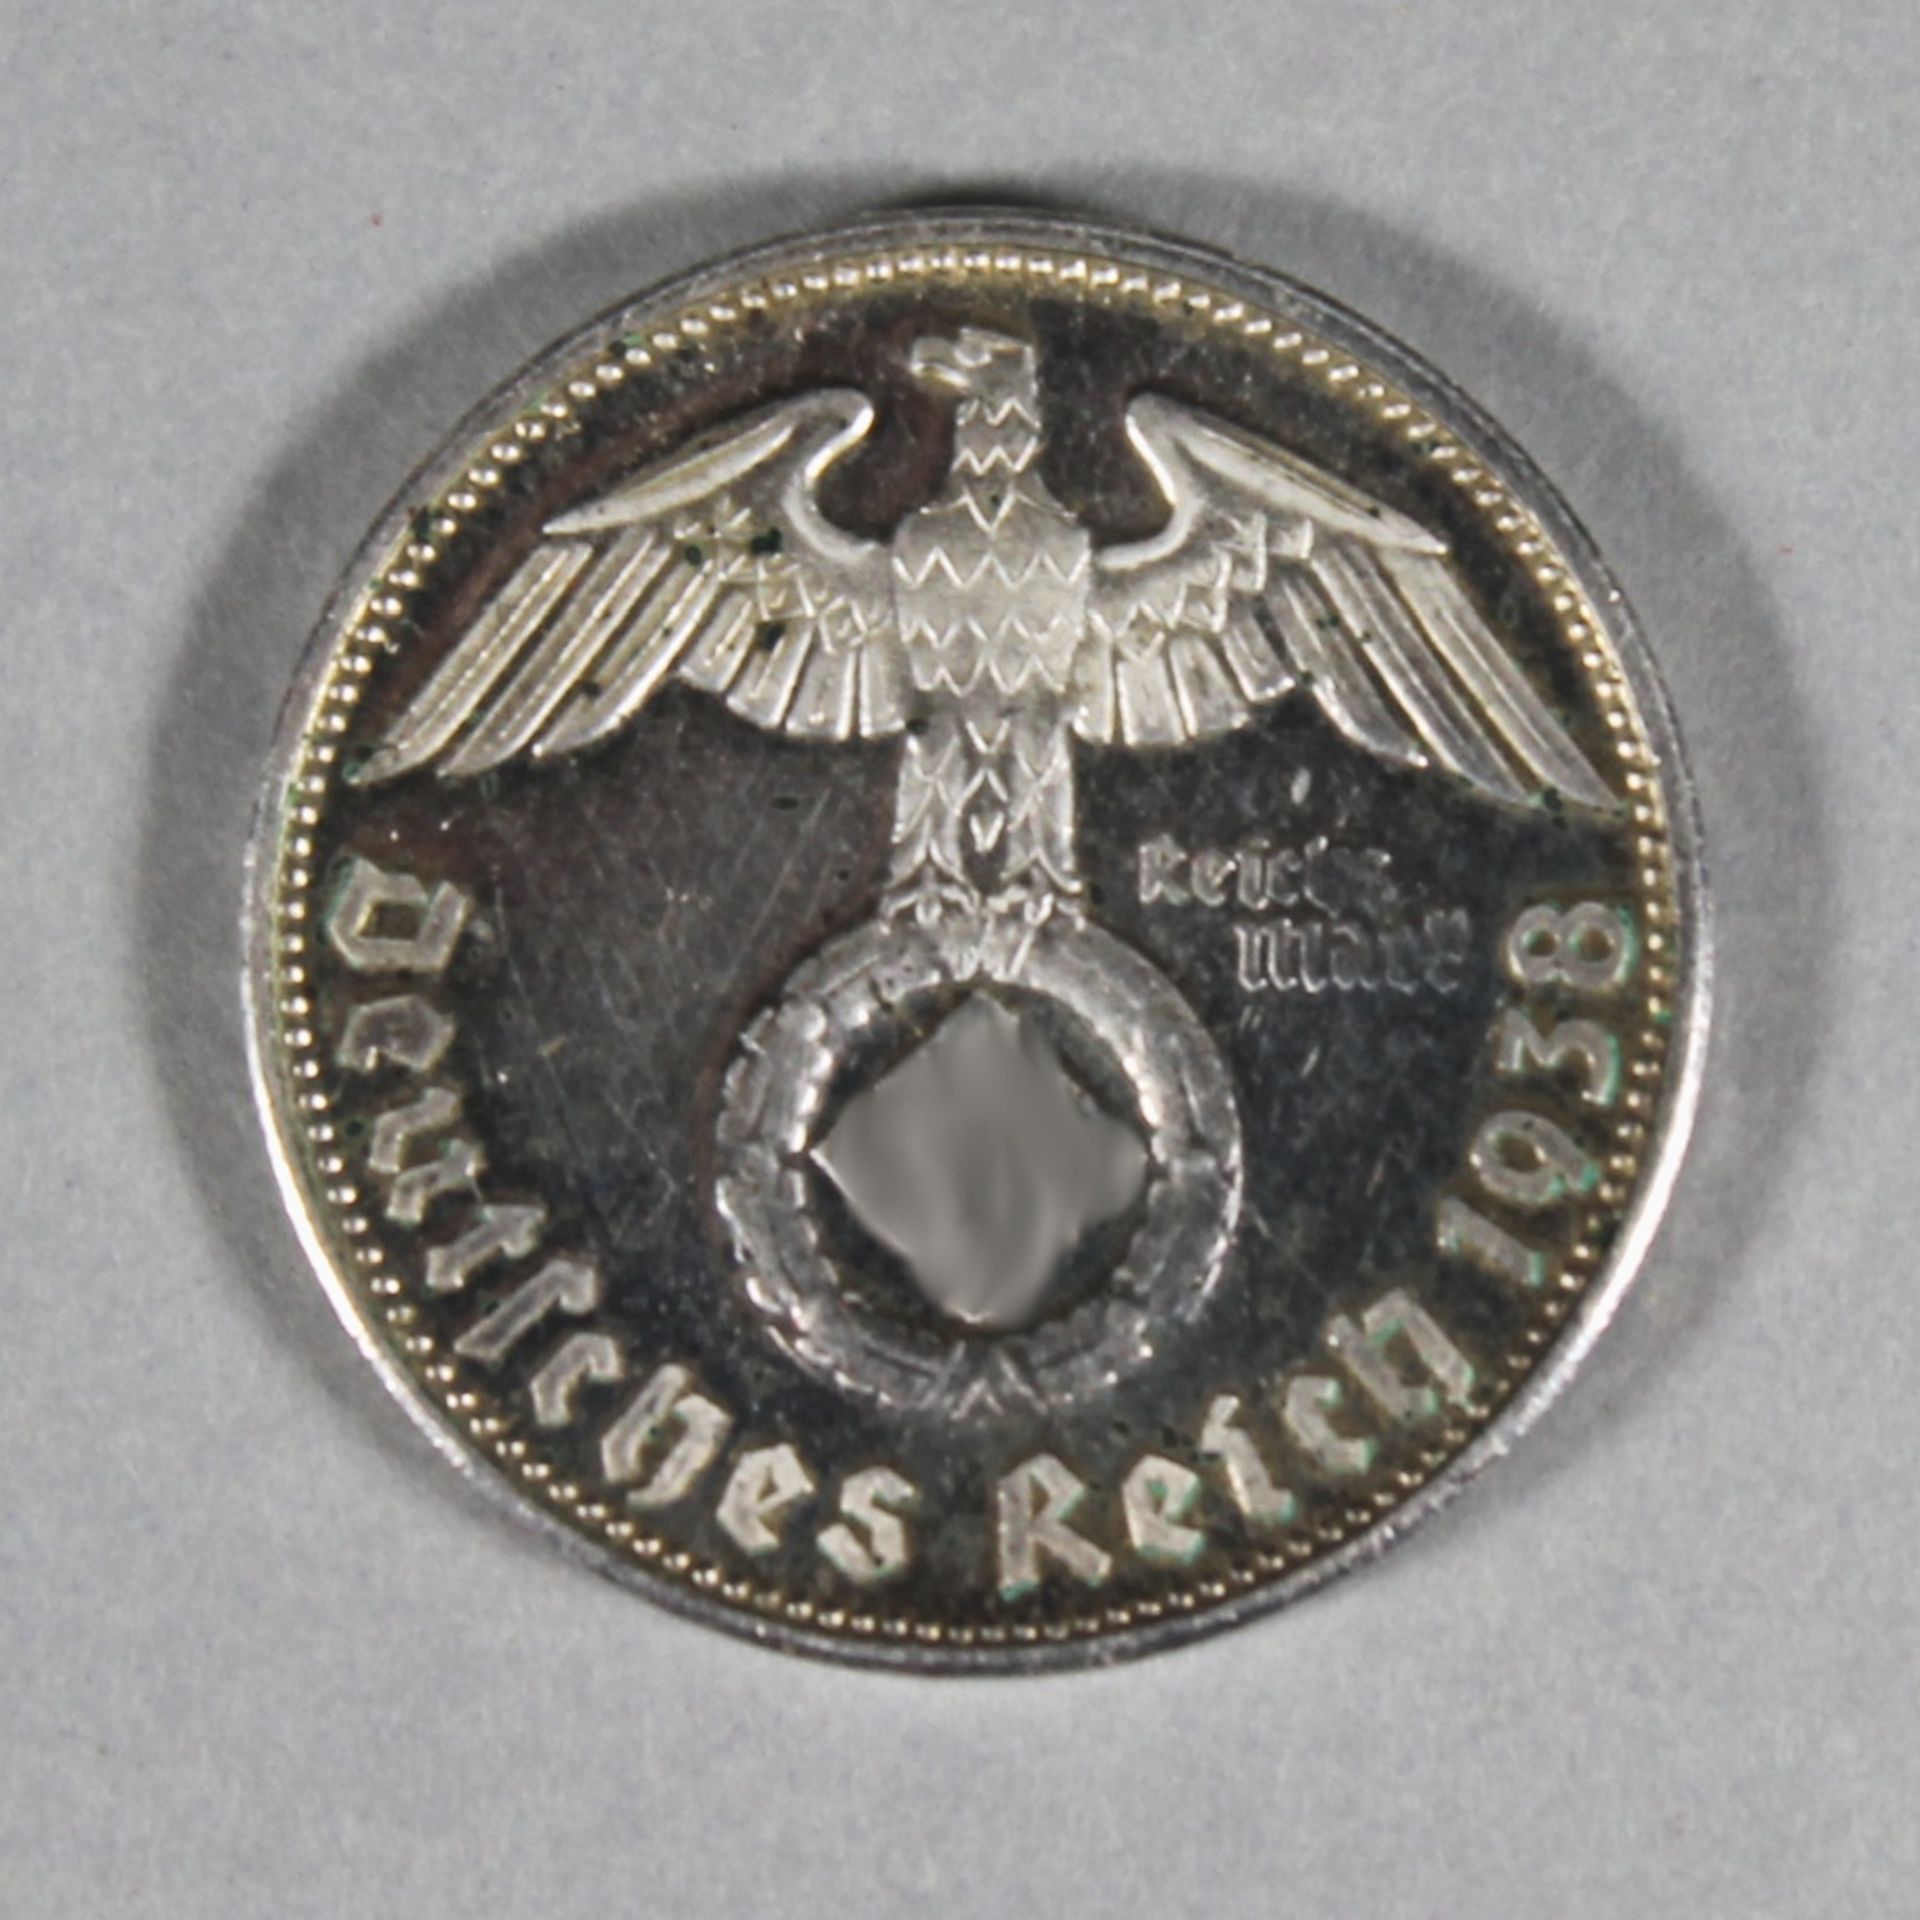 1 kleine Medaille "Adolf Hitler Reichsmark 1938" - Image 2 of 2